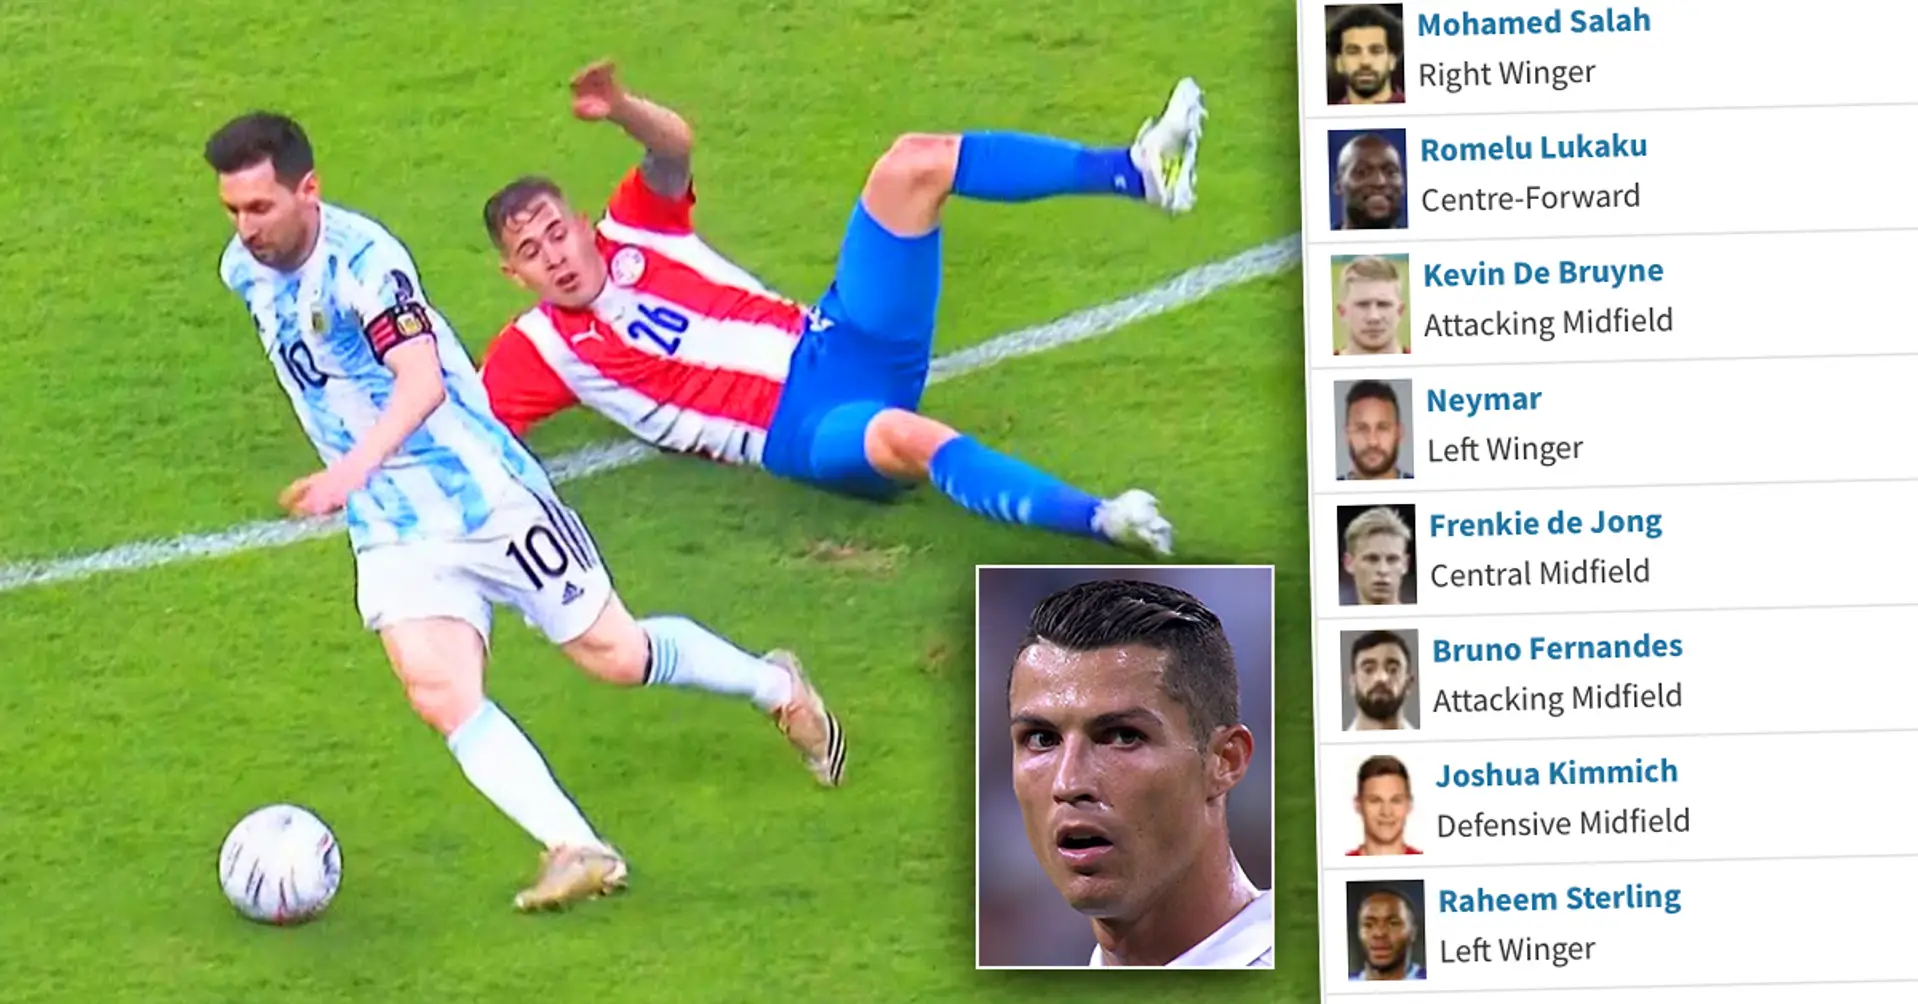 LEAK: Svelate le valutazioni dei migliori giocatori di FIFA 22, Messi e Ronaldo non sono più soli in vetta